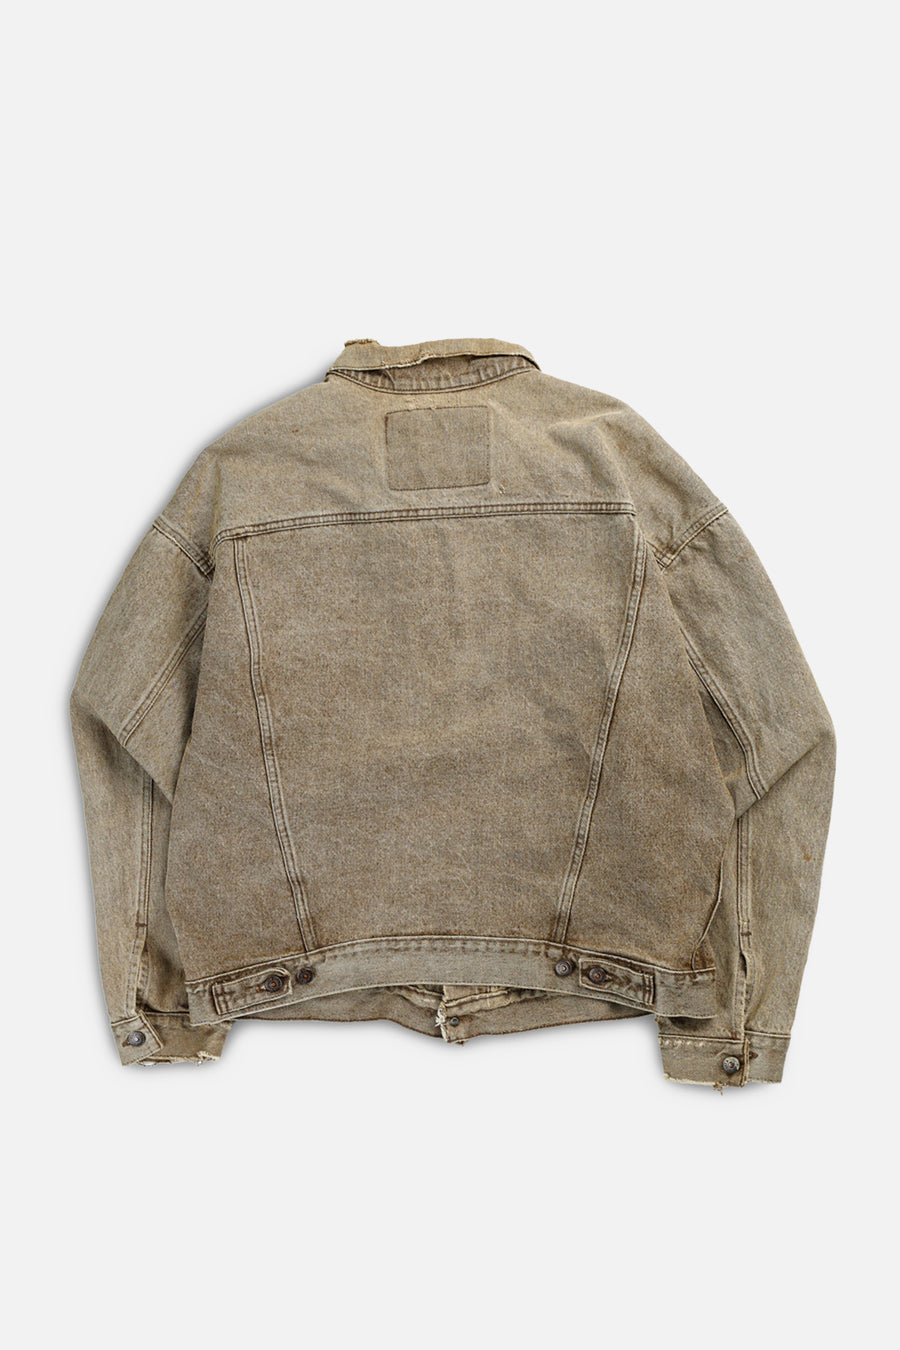 Vintage Levi's Denim Jacket - XL